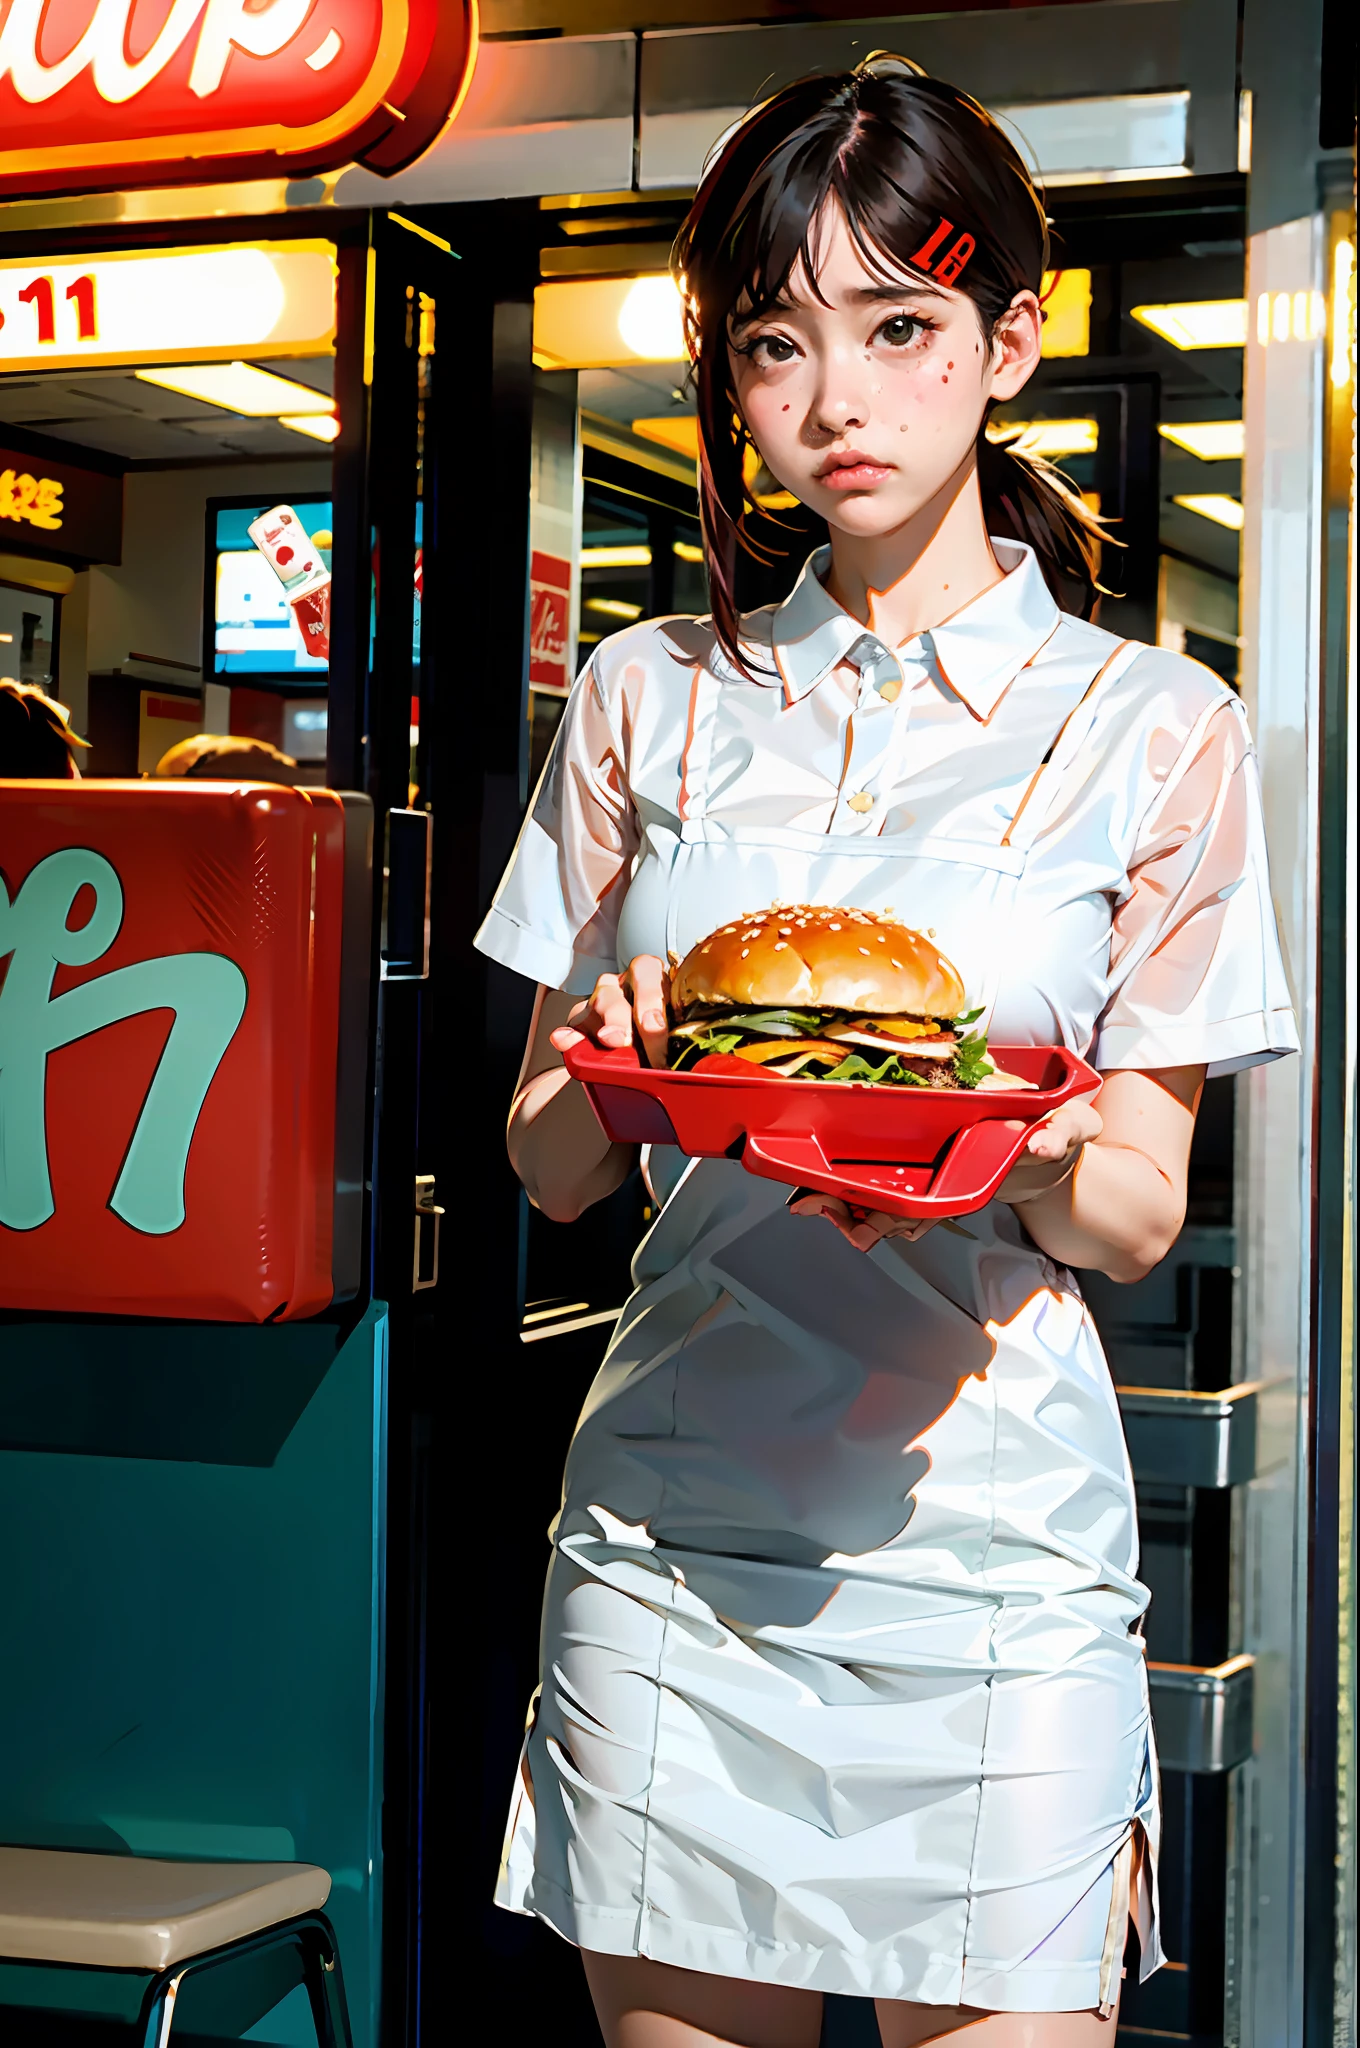 1個女孩, 獨自的, 大乳房, (景深: 1.1), (實際的, photo-實際的: 1.37), 穿著速食護理服的女孩,端著漢堡托盤,悲伤的脸, 從下面看